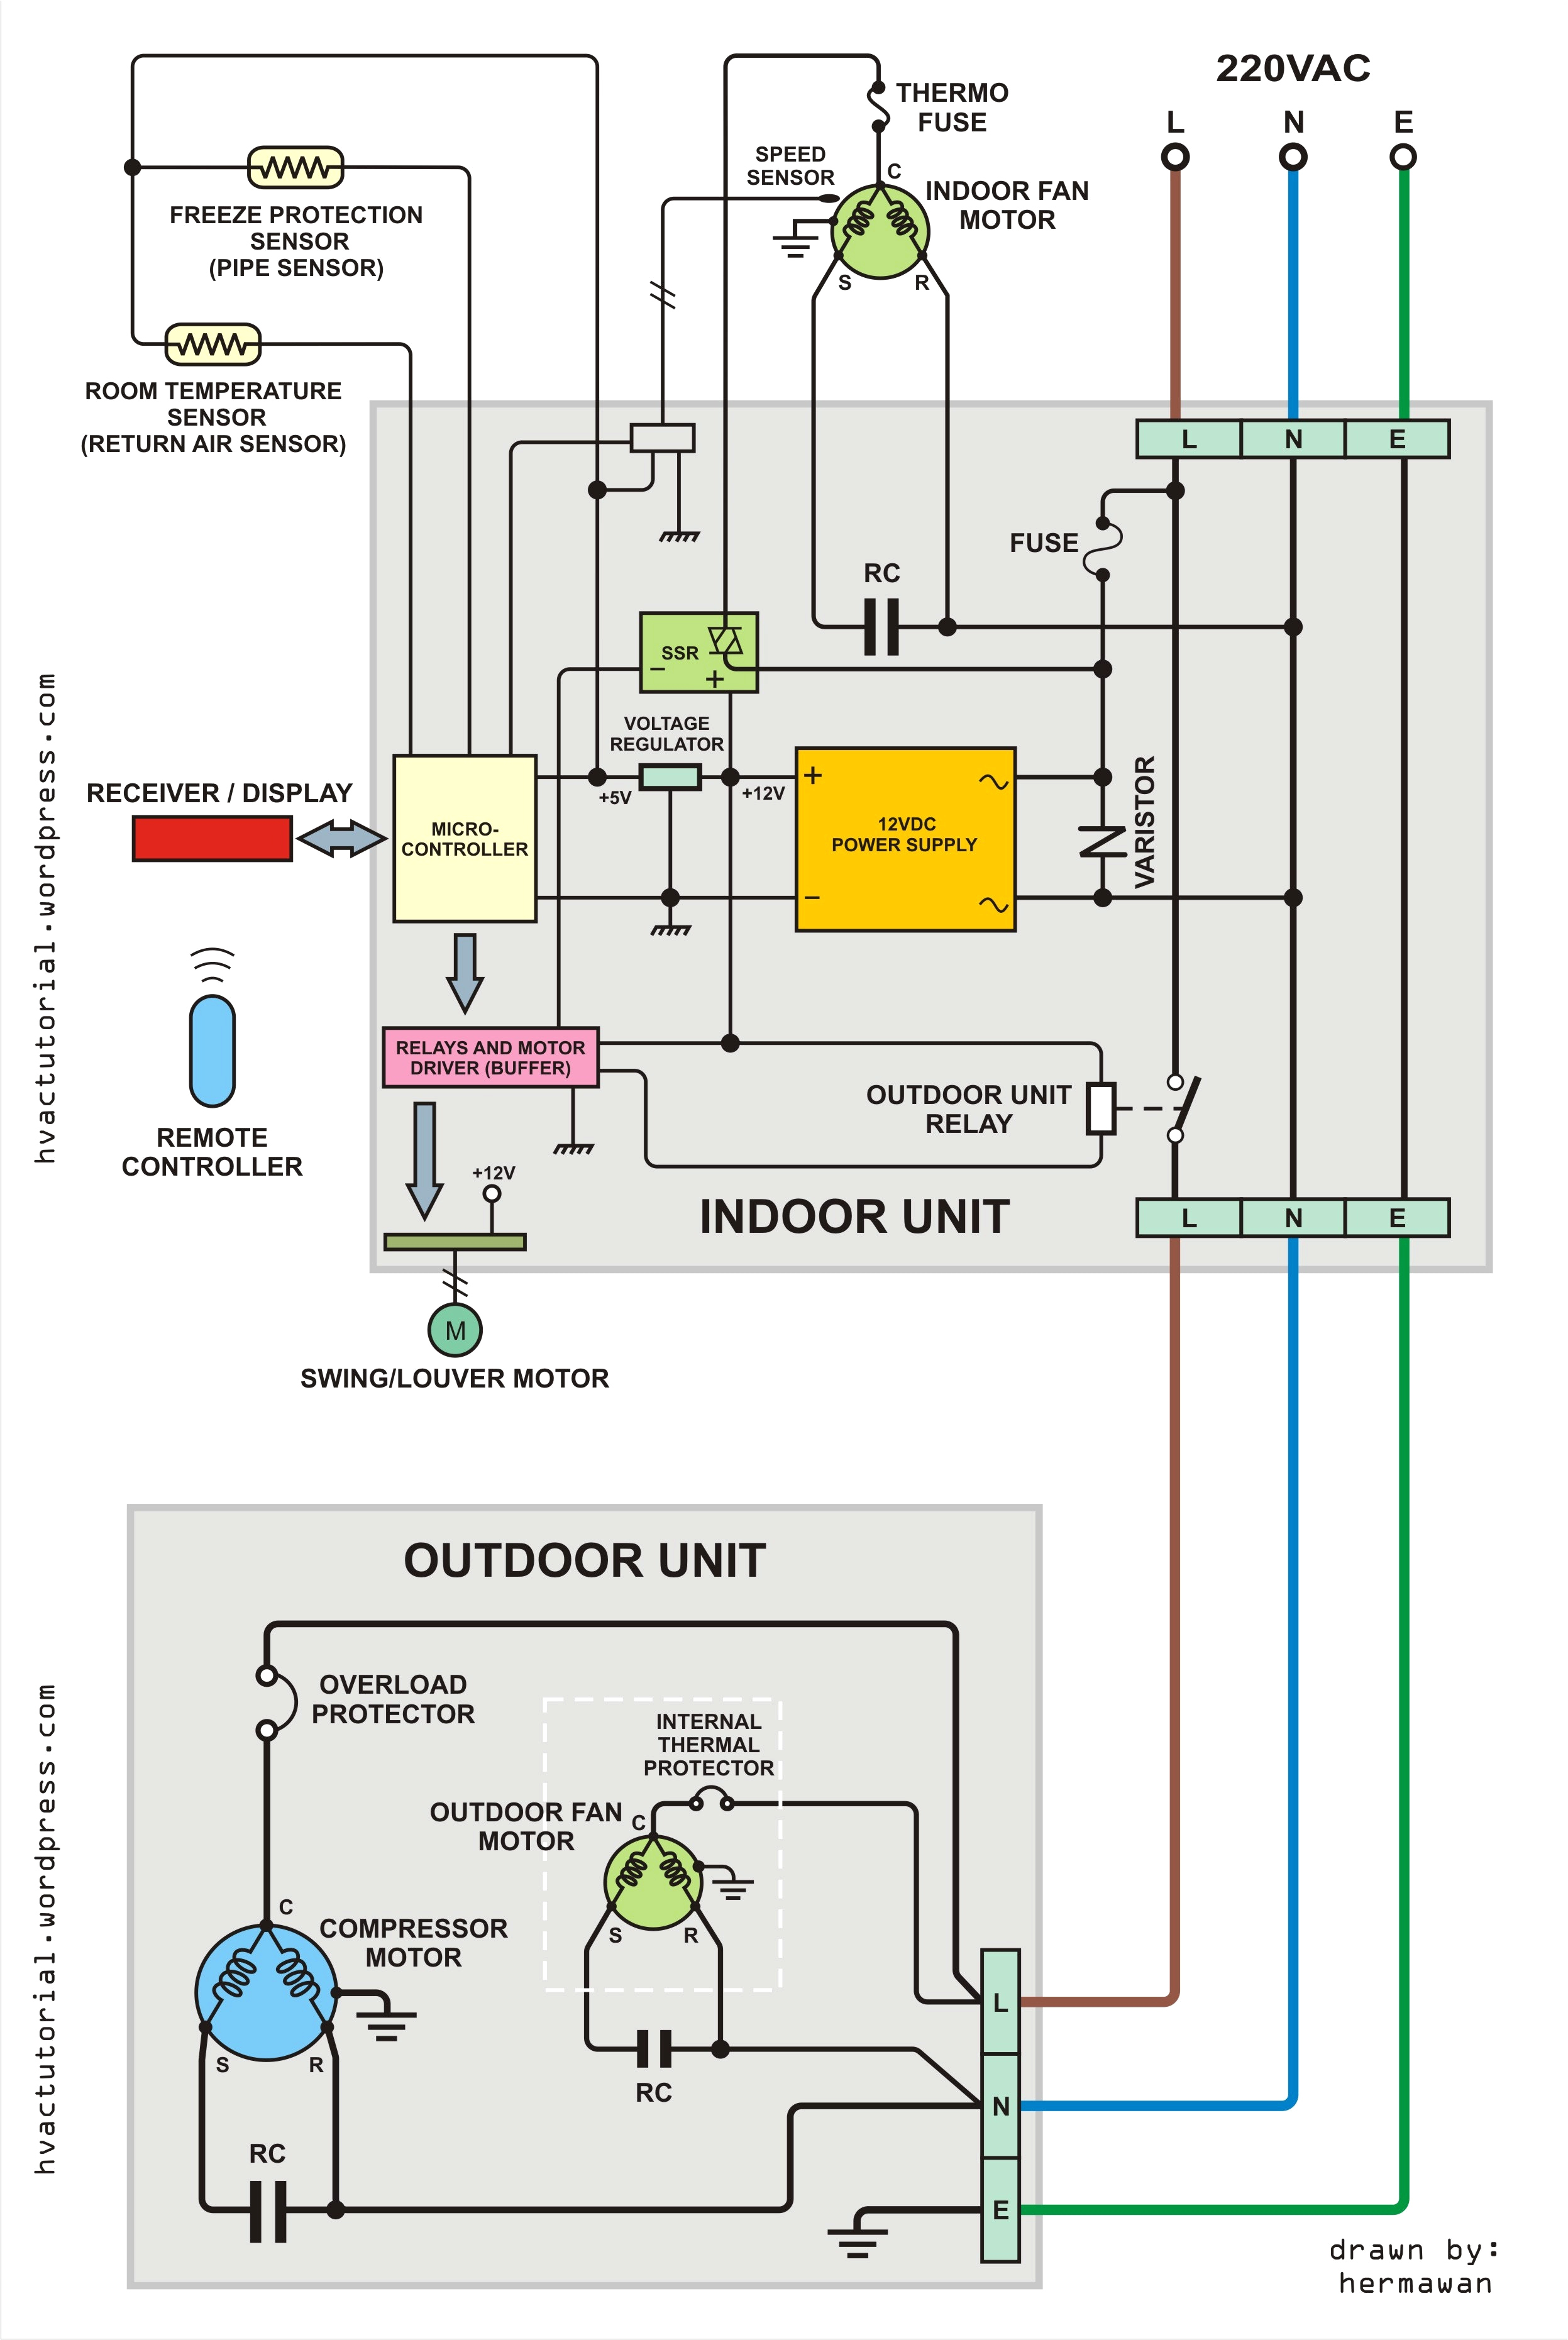 general ac wiring diagrams wiring diagram name general house wiring diagram general ac wiring diagram wiring